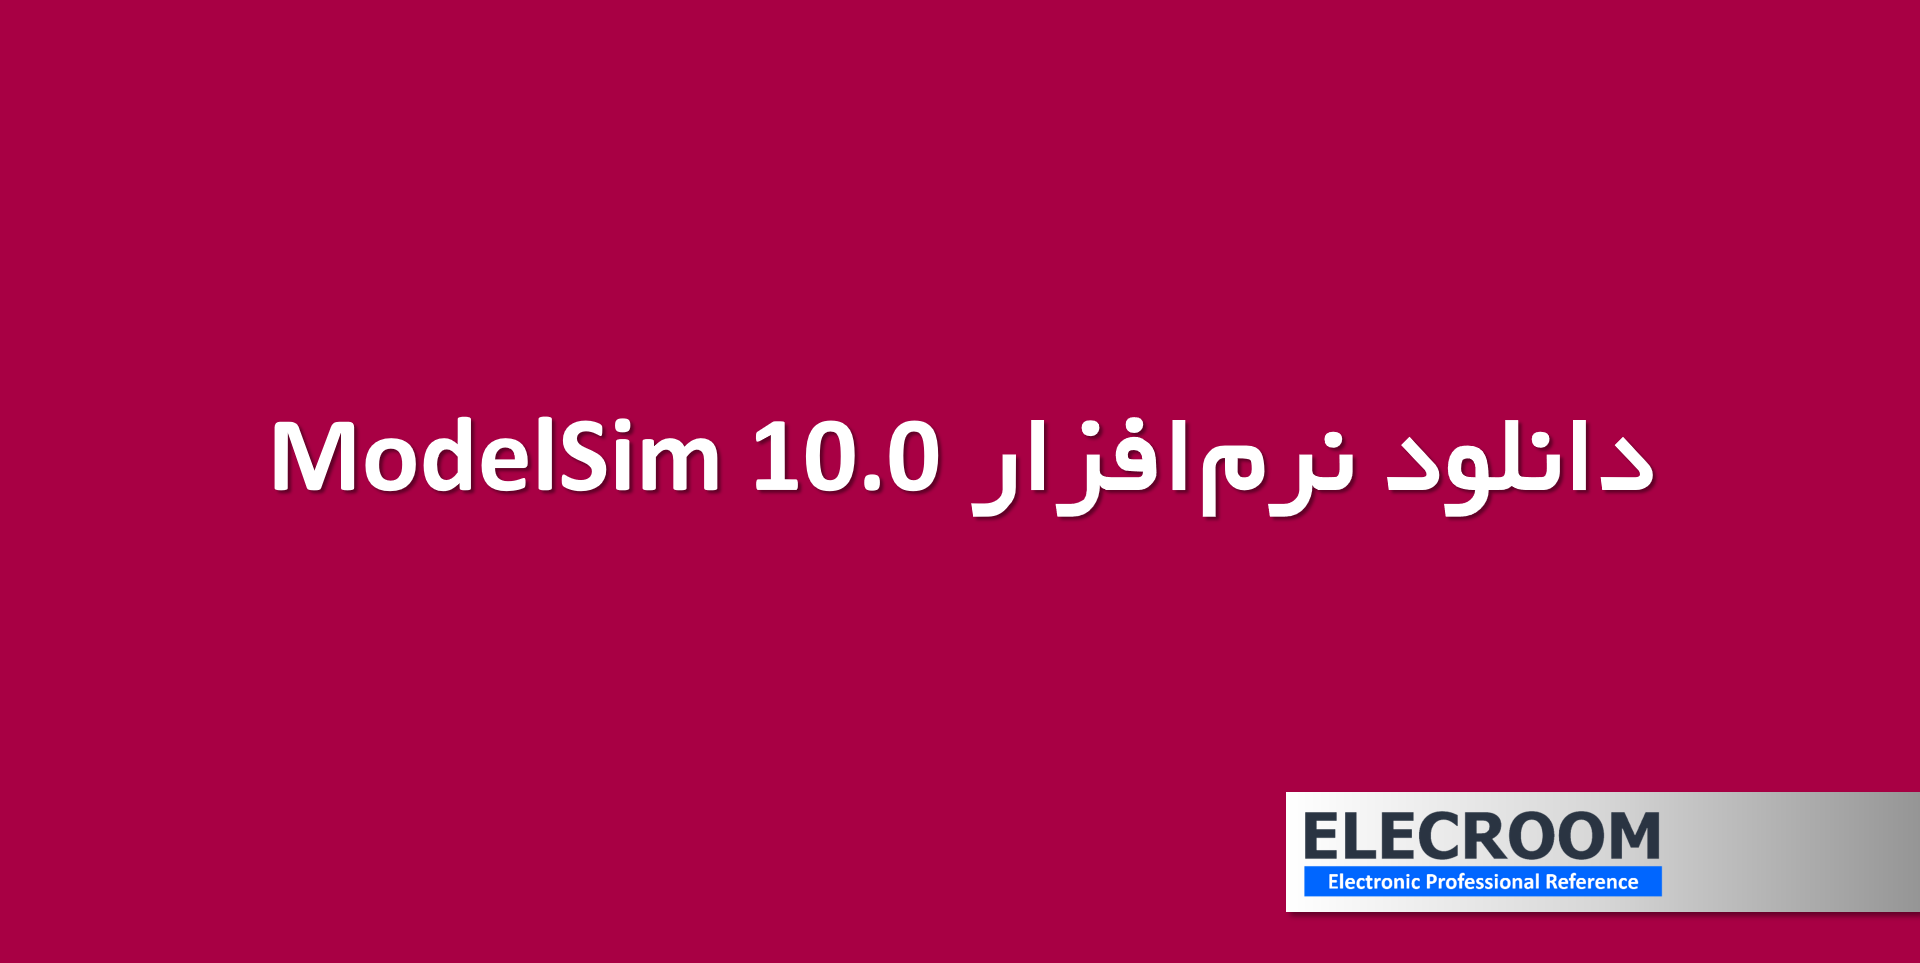 دانلود نرم افزار ModelSim 10.0